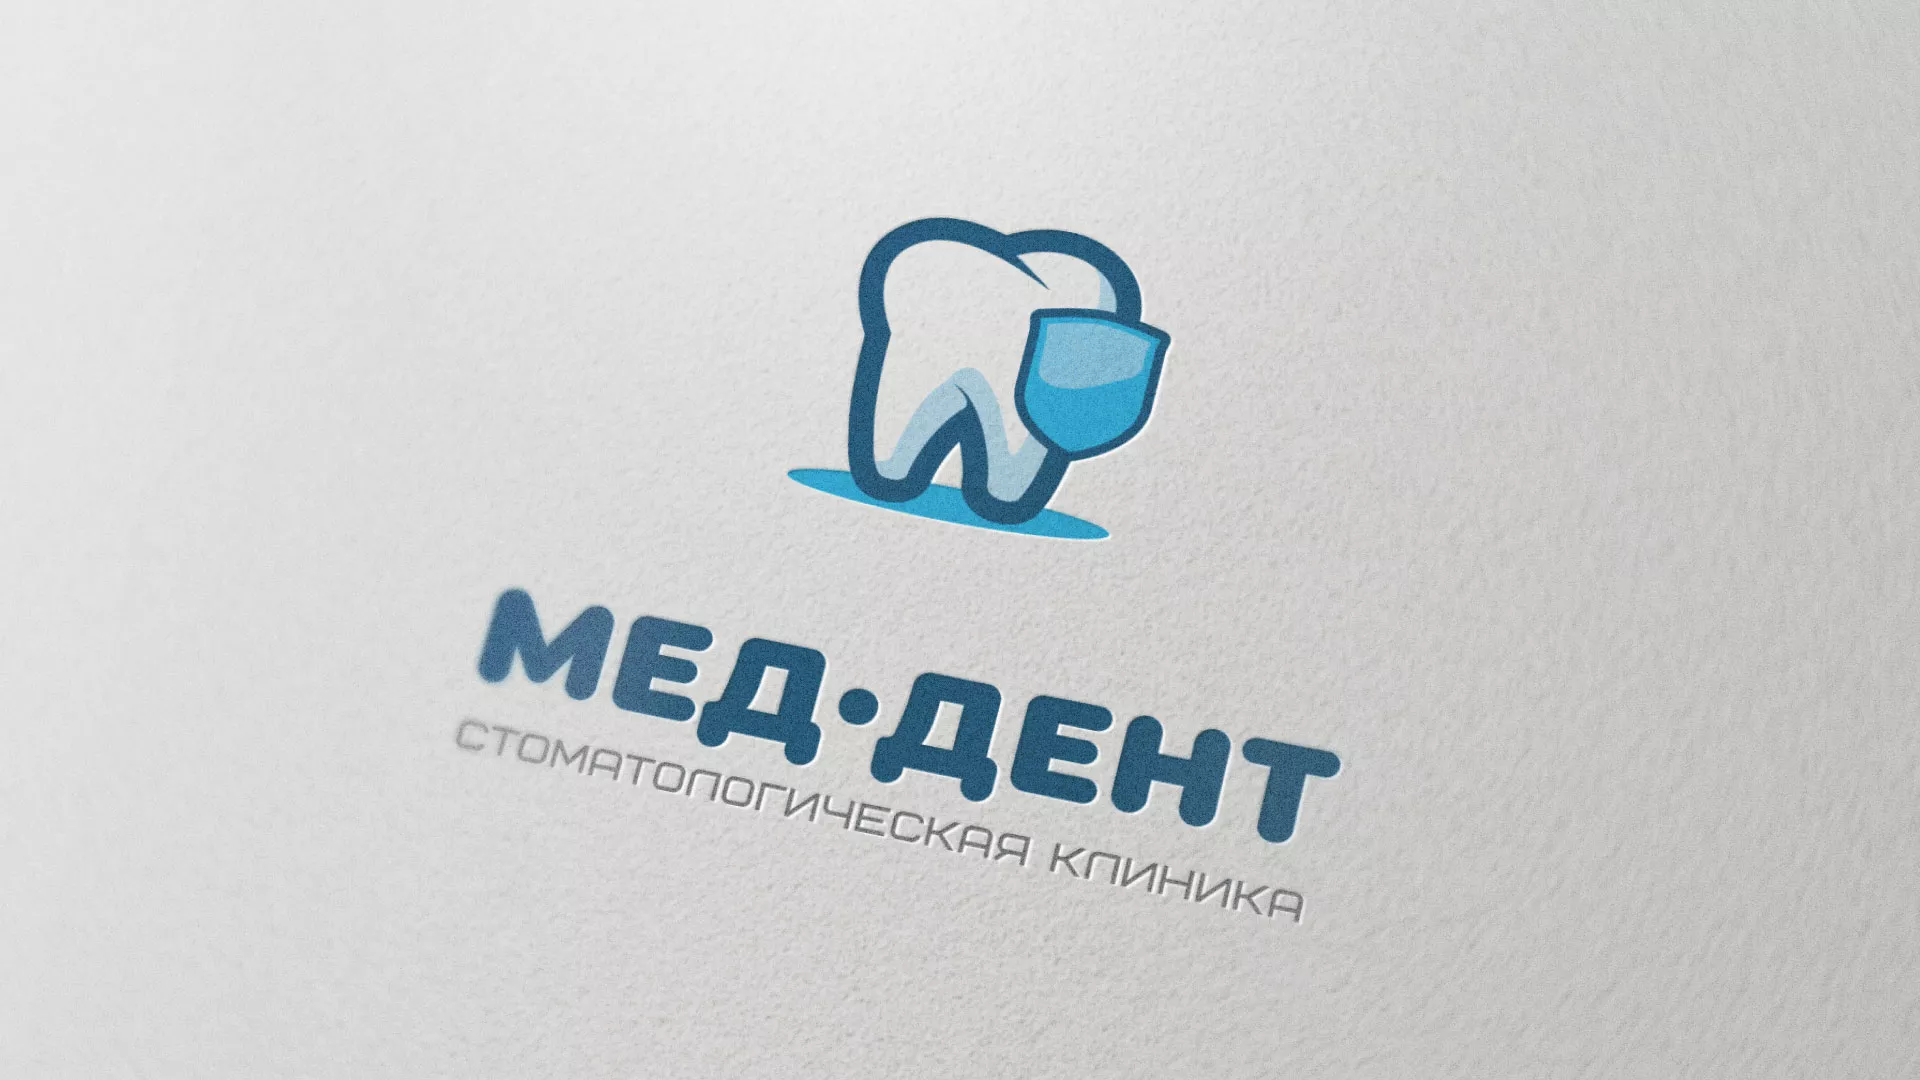 Разработка логотипа стоматологической клиники «МЕД-ДЕНТ» в Петровске-Забайкальском